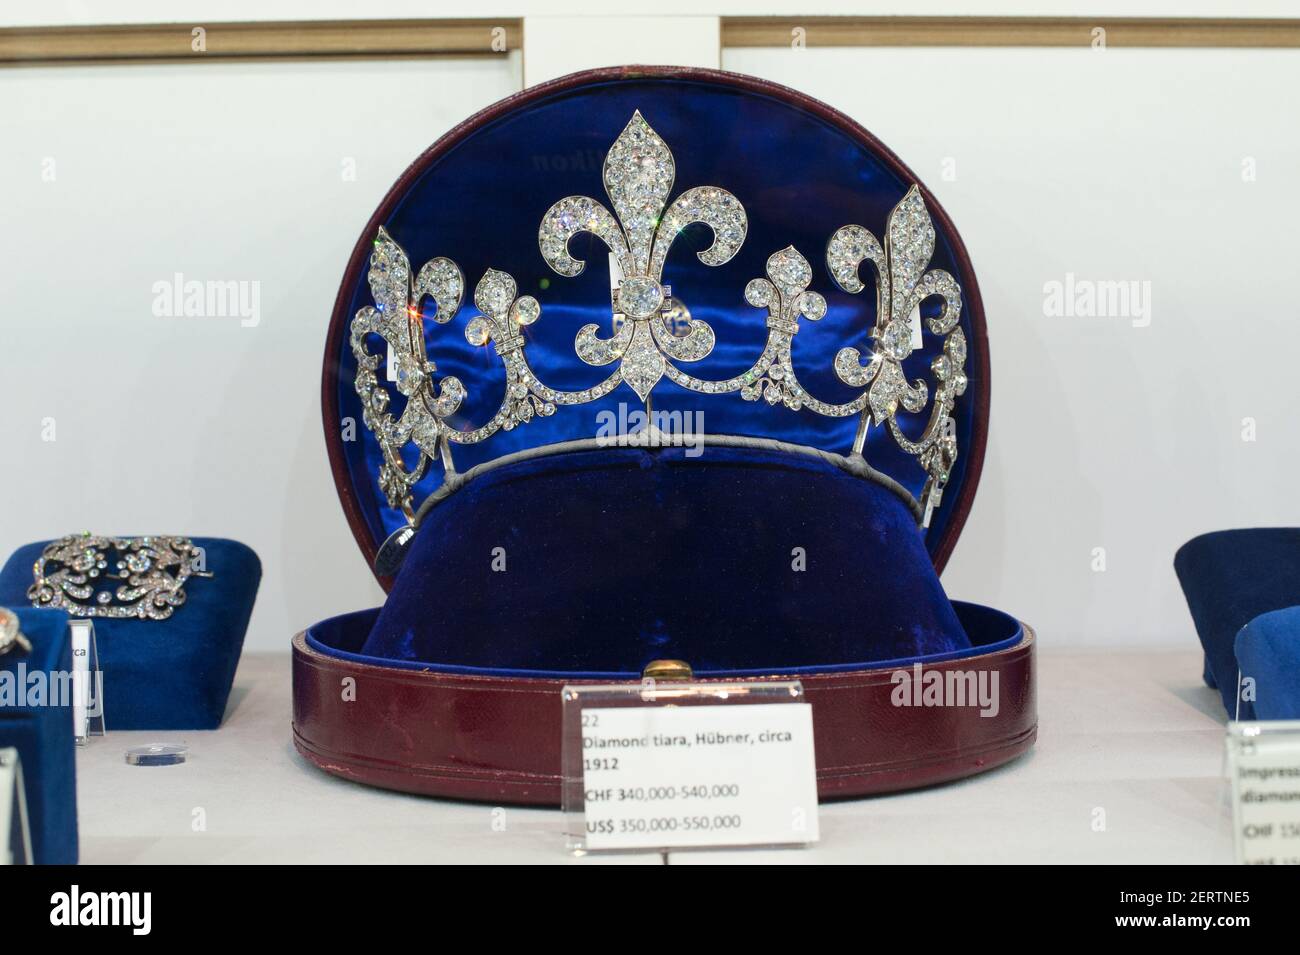 Diamond Hubbner tiara circa 1912 (circa 350,000-550,000 dollari) della  famiglia reale francese all'anteprima stampa di Sotheby per i gioielli  reali della famiglia Borbone Parma il 12 ottobre 2018 a New York, New